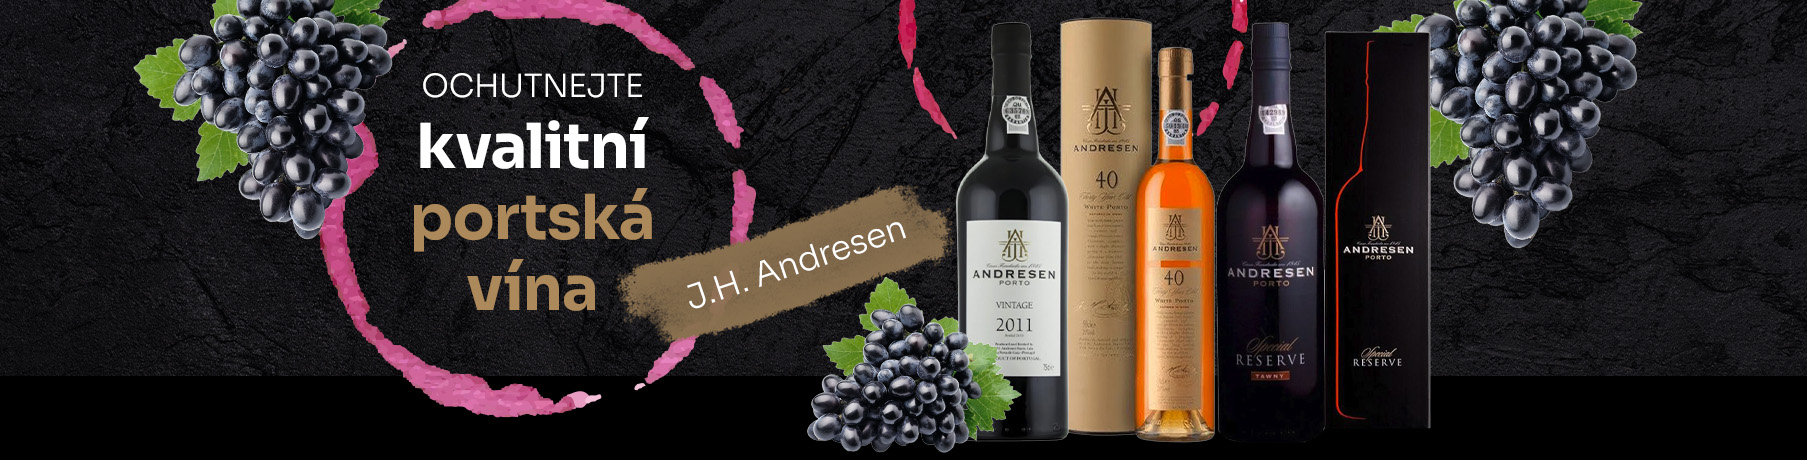 Portská vína J.H. Andresen